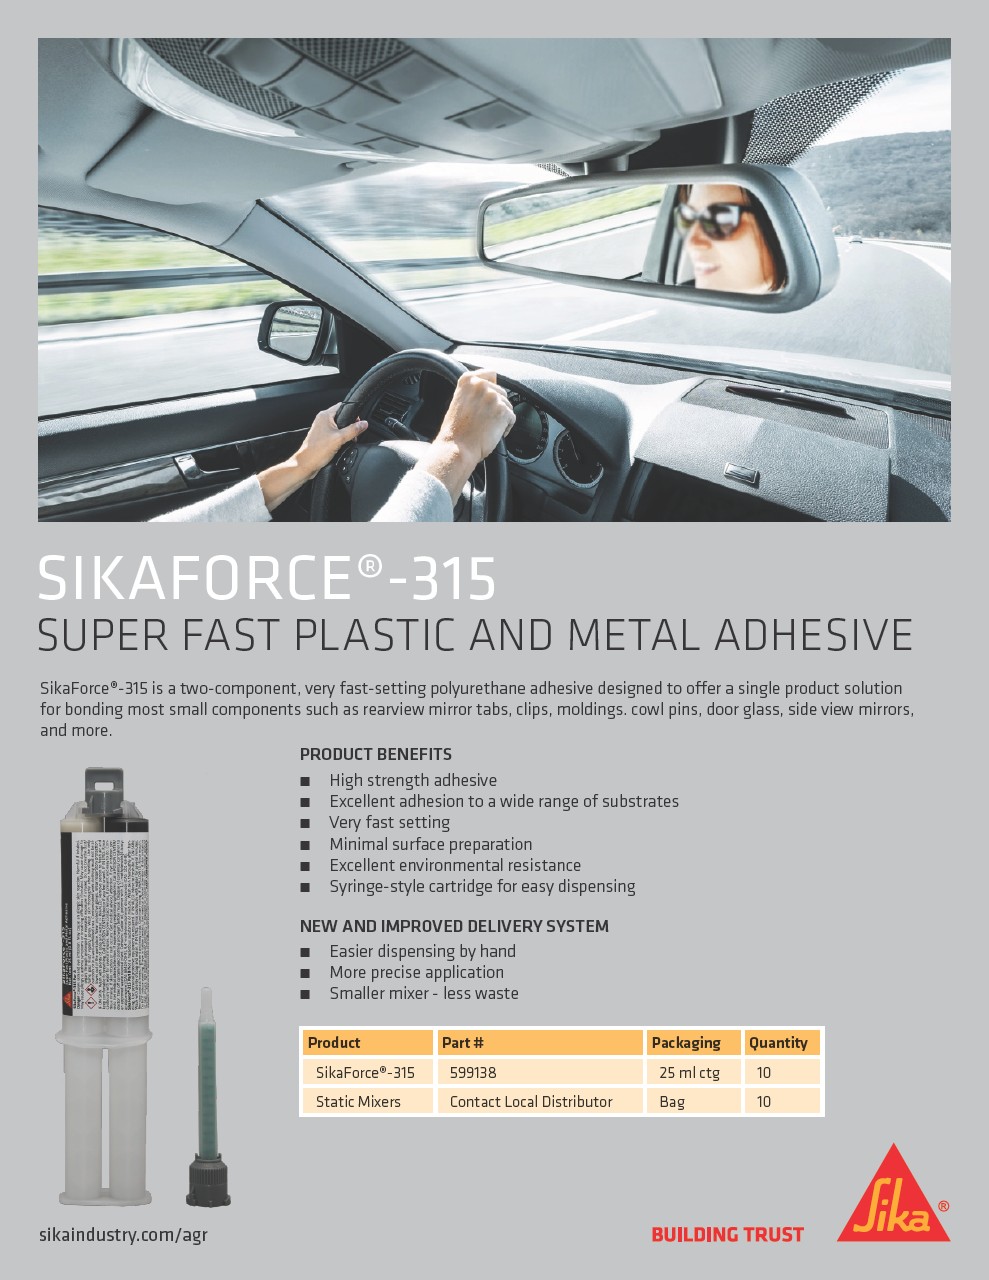 Sikaforce 315 - Fast Plastic & Metal Adhesive